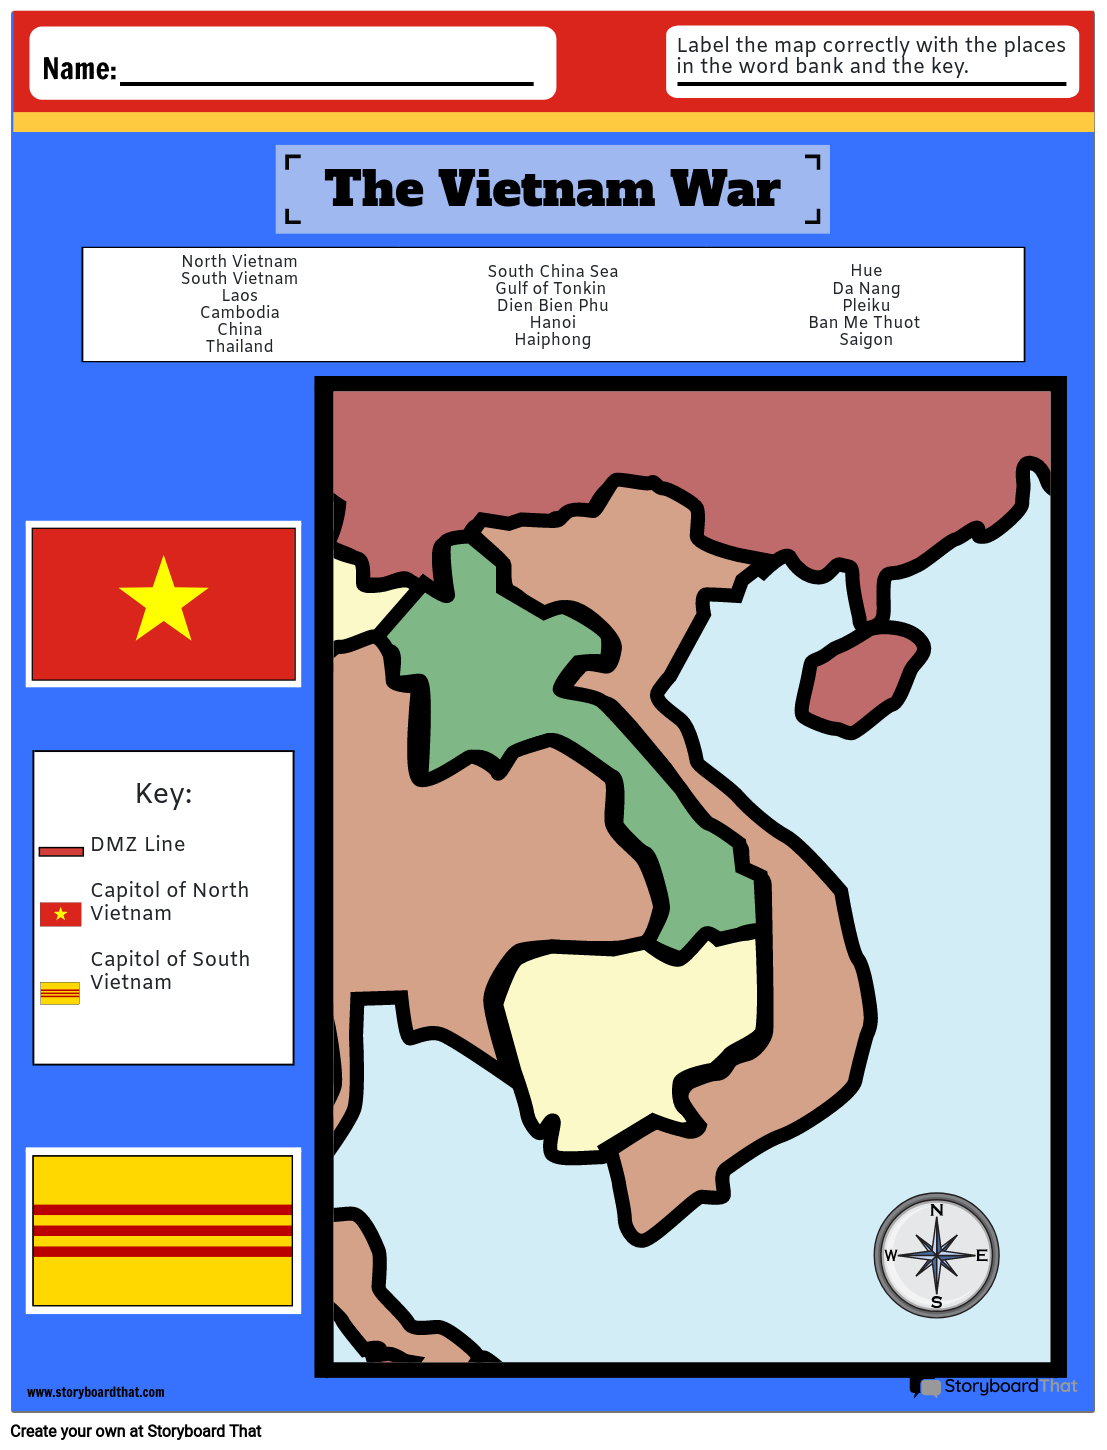 Пустая Карта Войны во Вьетнаме